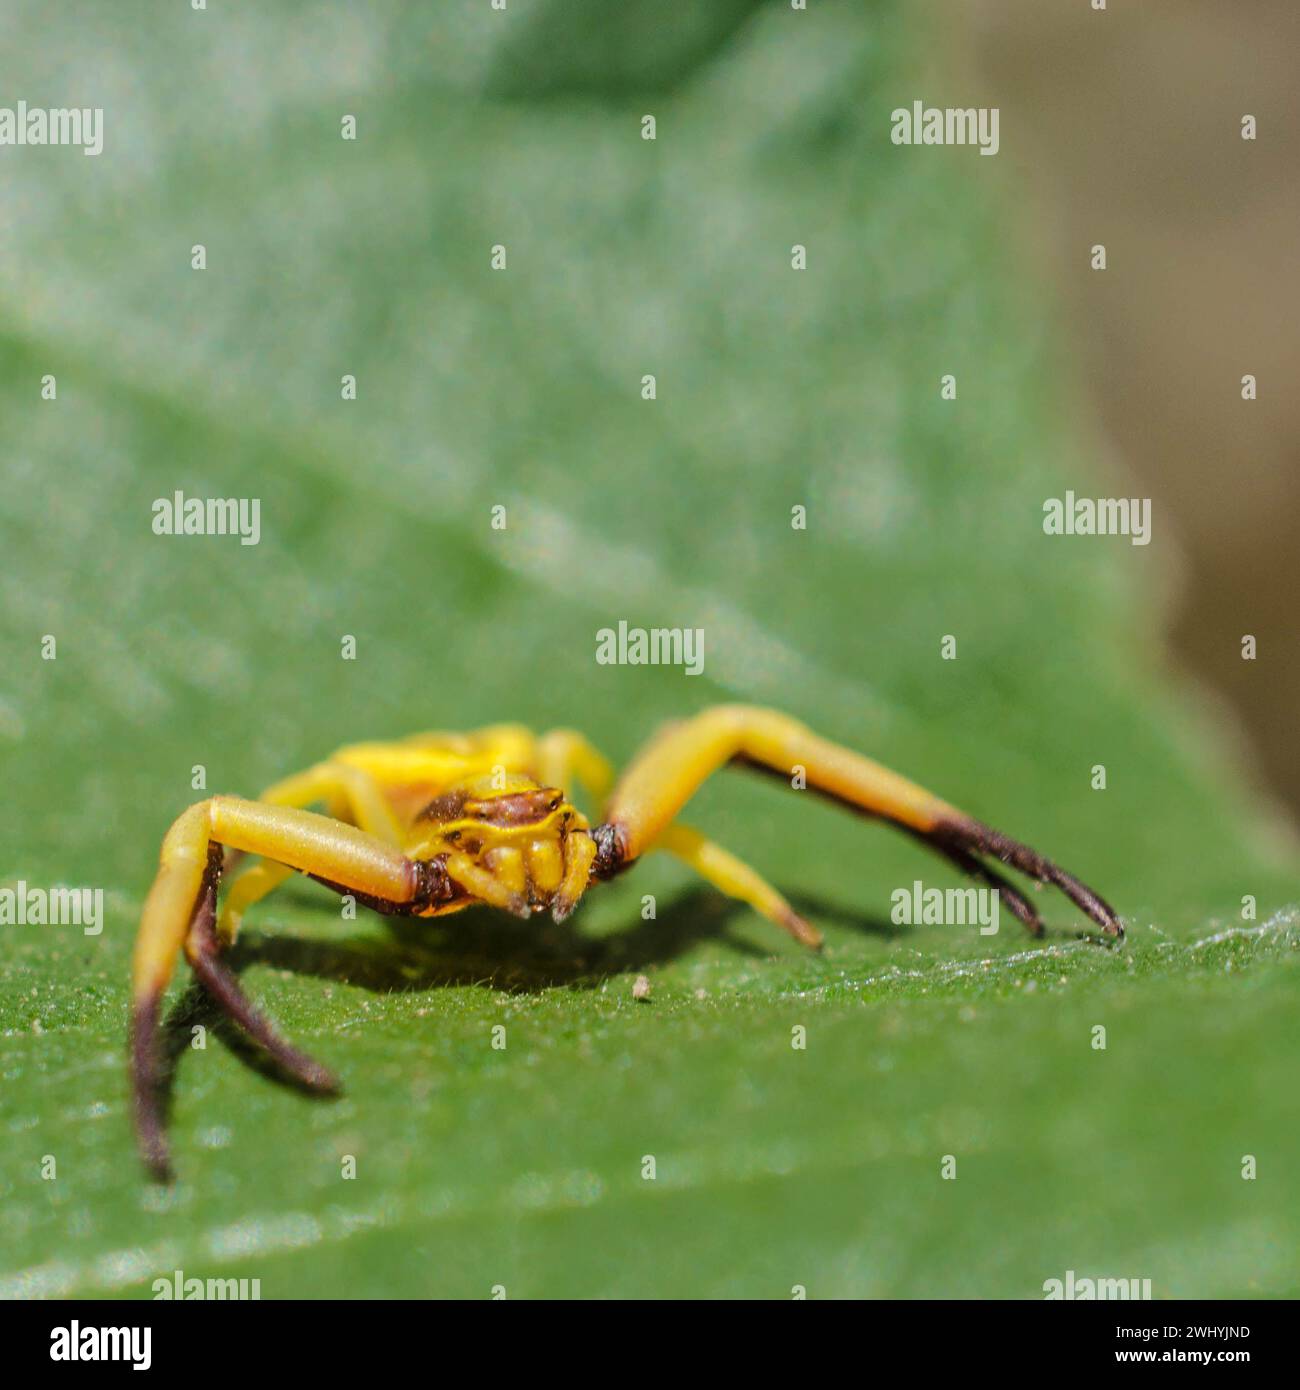 Macro photographie, araignée crabe, formosipes Misumenoides, gros plan araignée, détails Arachnid Banque D'Images